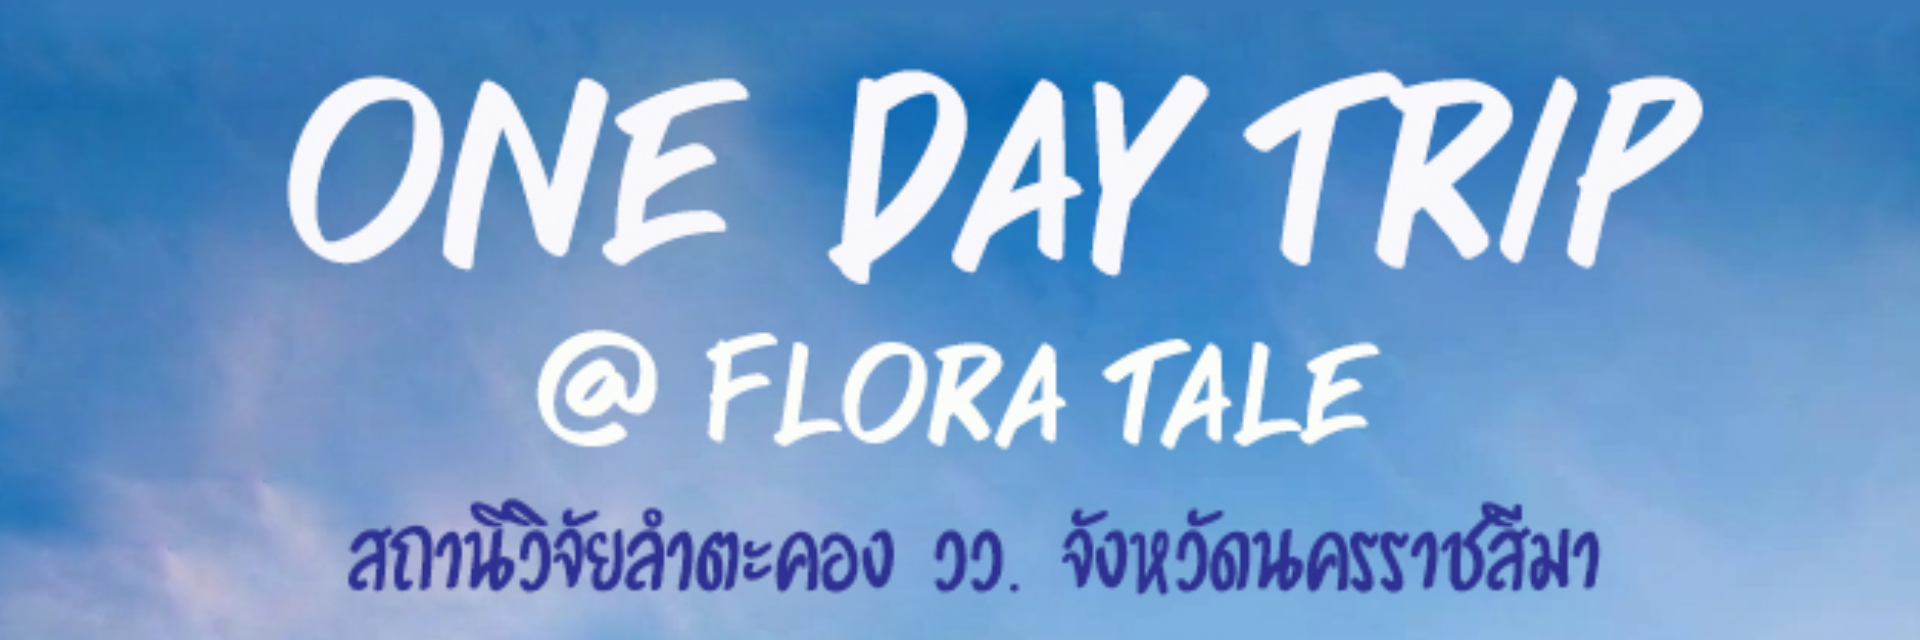 เที่ยวชิล ชิล... One Day Trip @ Flora Tale  สถานีวิจัยลำตะคอง วว. จังหวัดนครราชสีมา